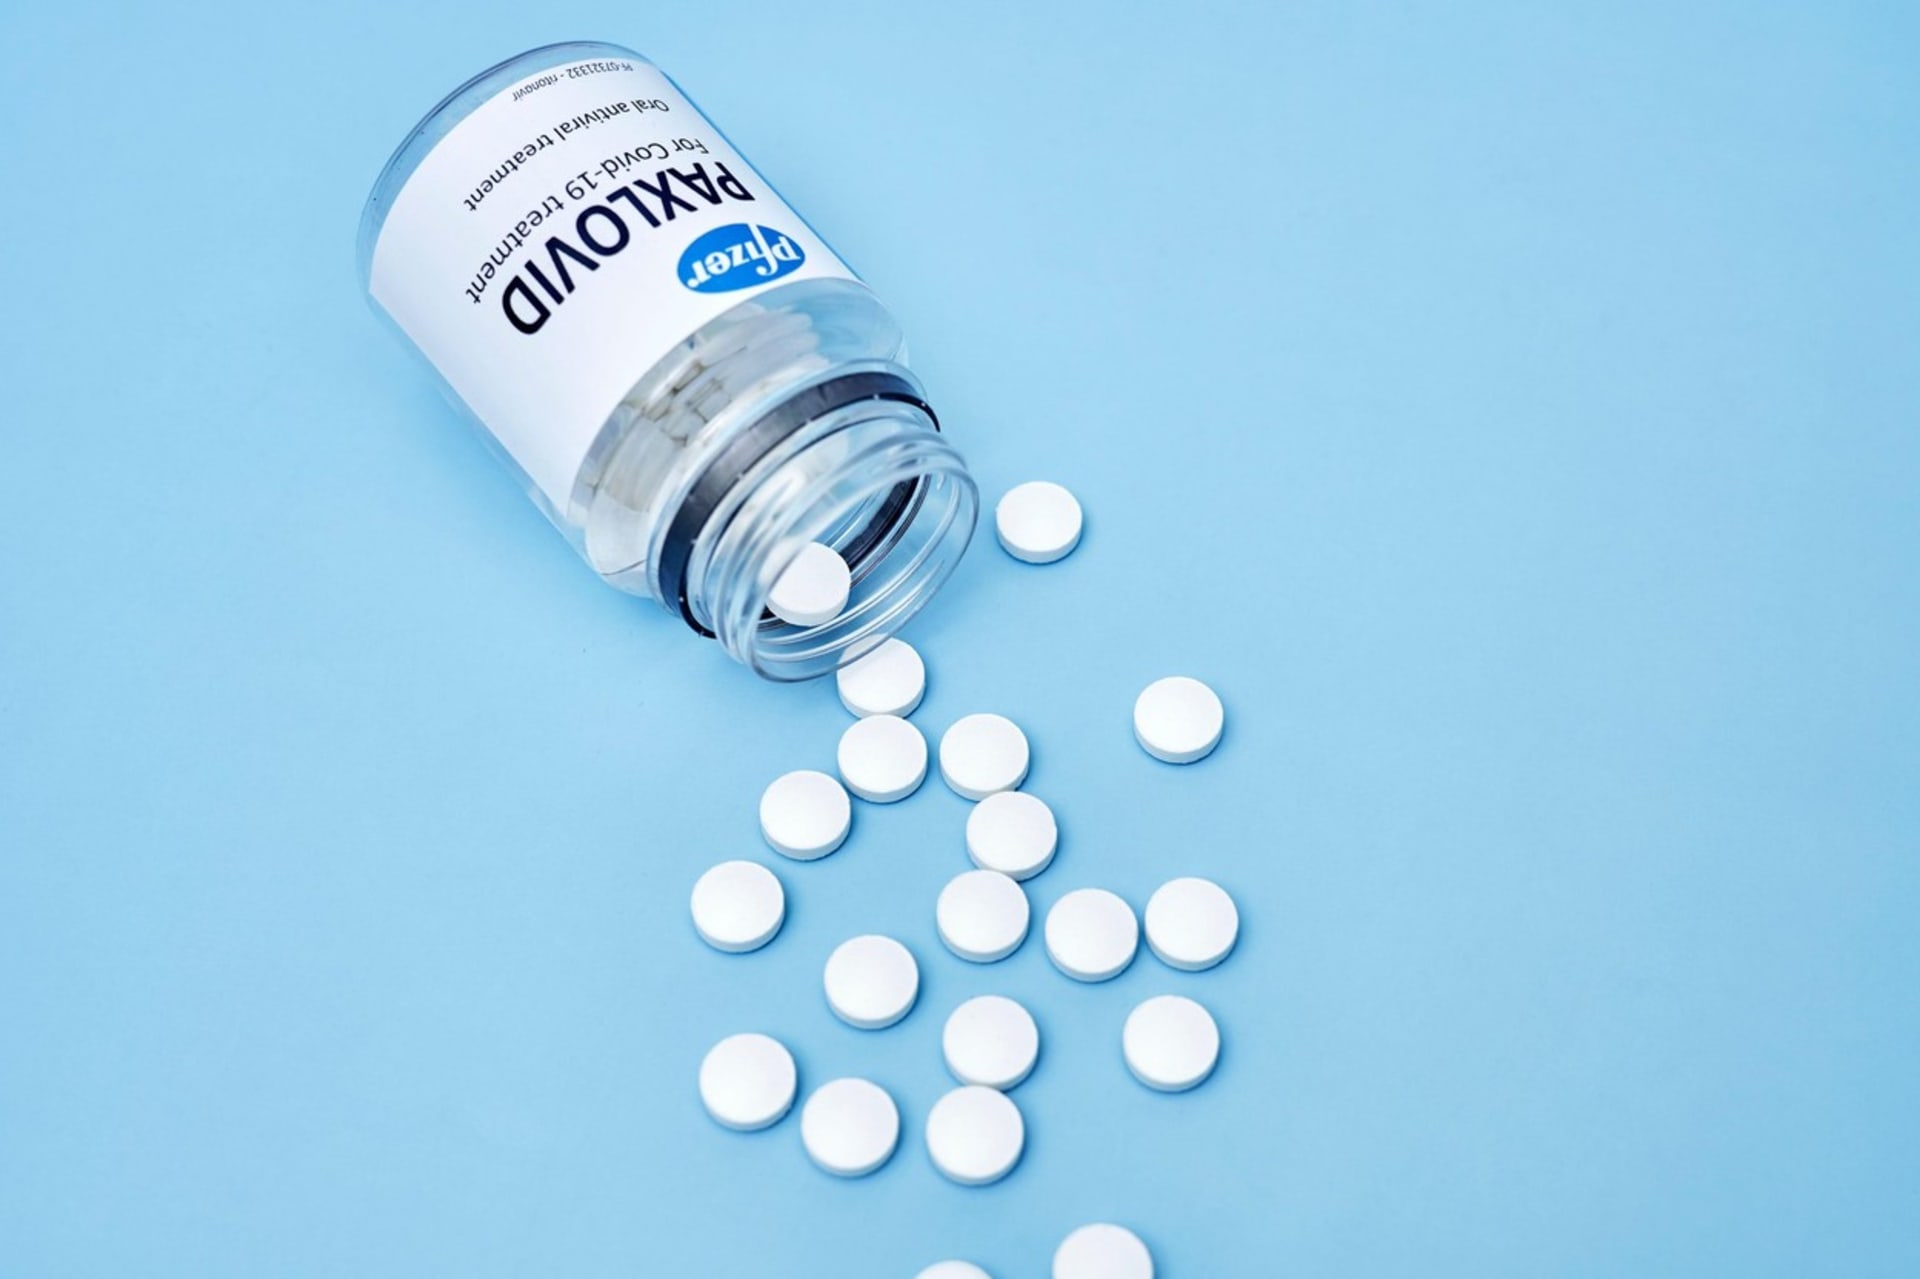 Podle tří testů společnosti Pfizer je lék paxlovid účinný proti omikronu. Riziko hospitalizace a úmrtí snižuje o 90 procent.